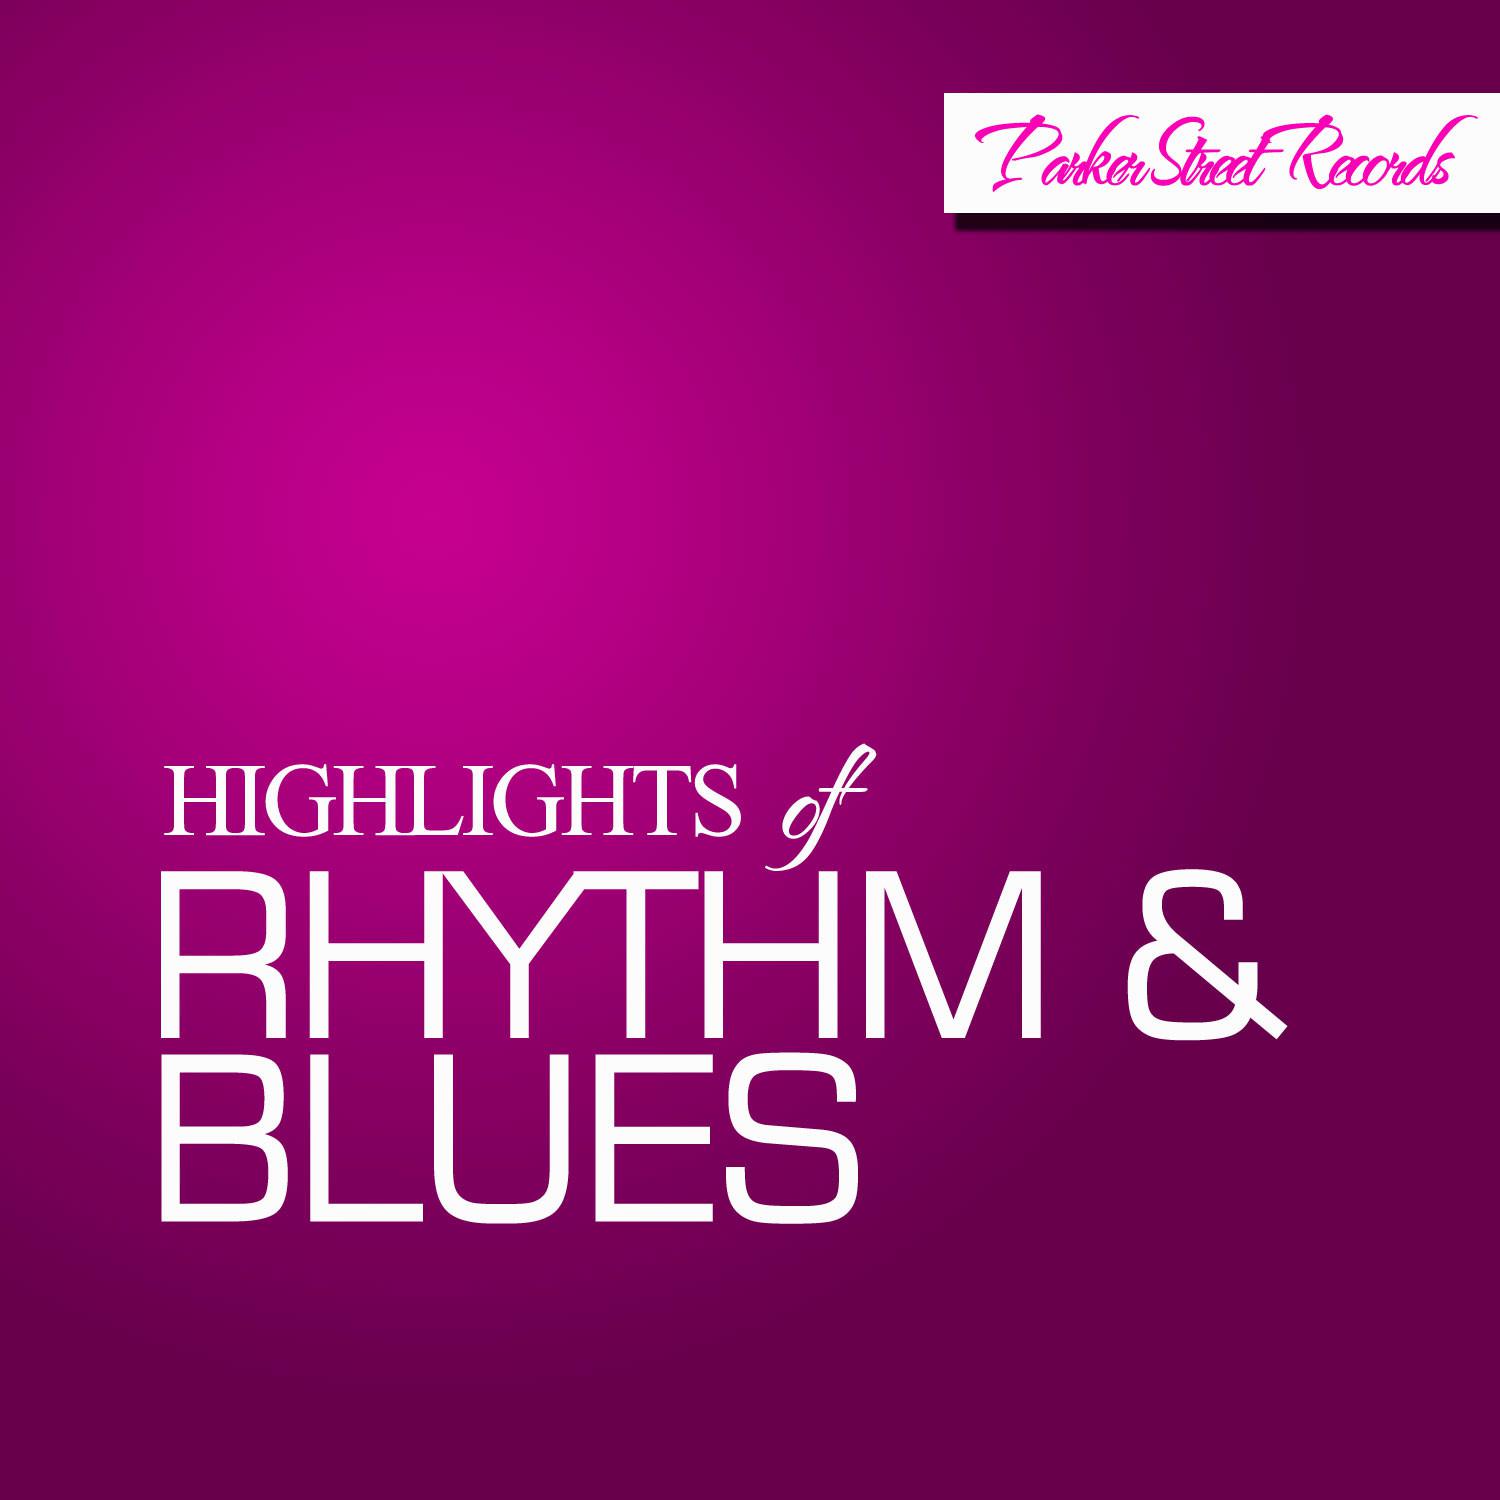 Highlights of Rhythm & Blues